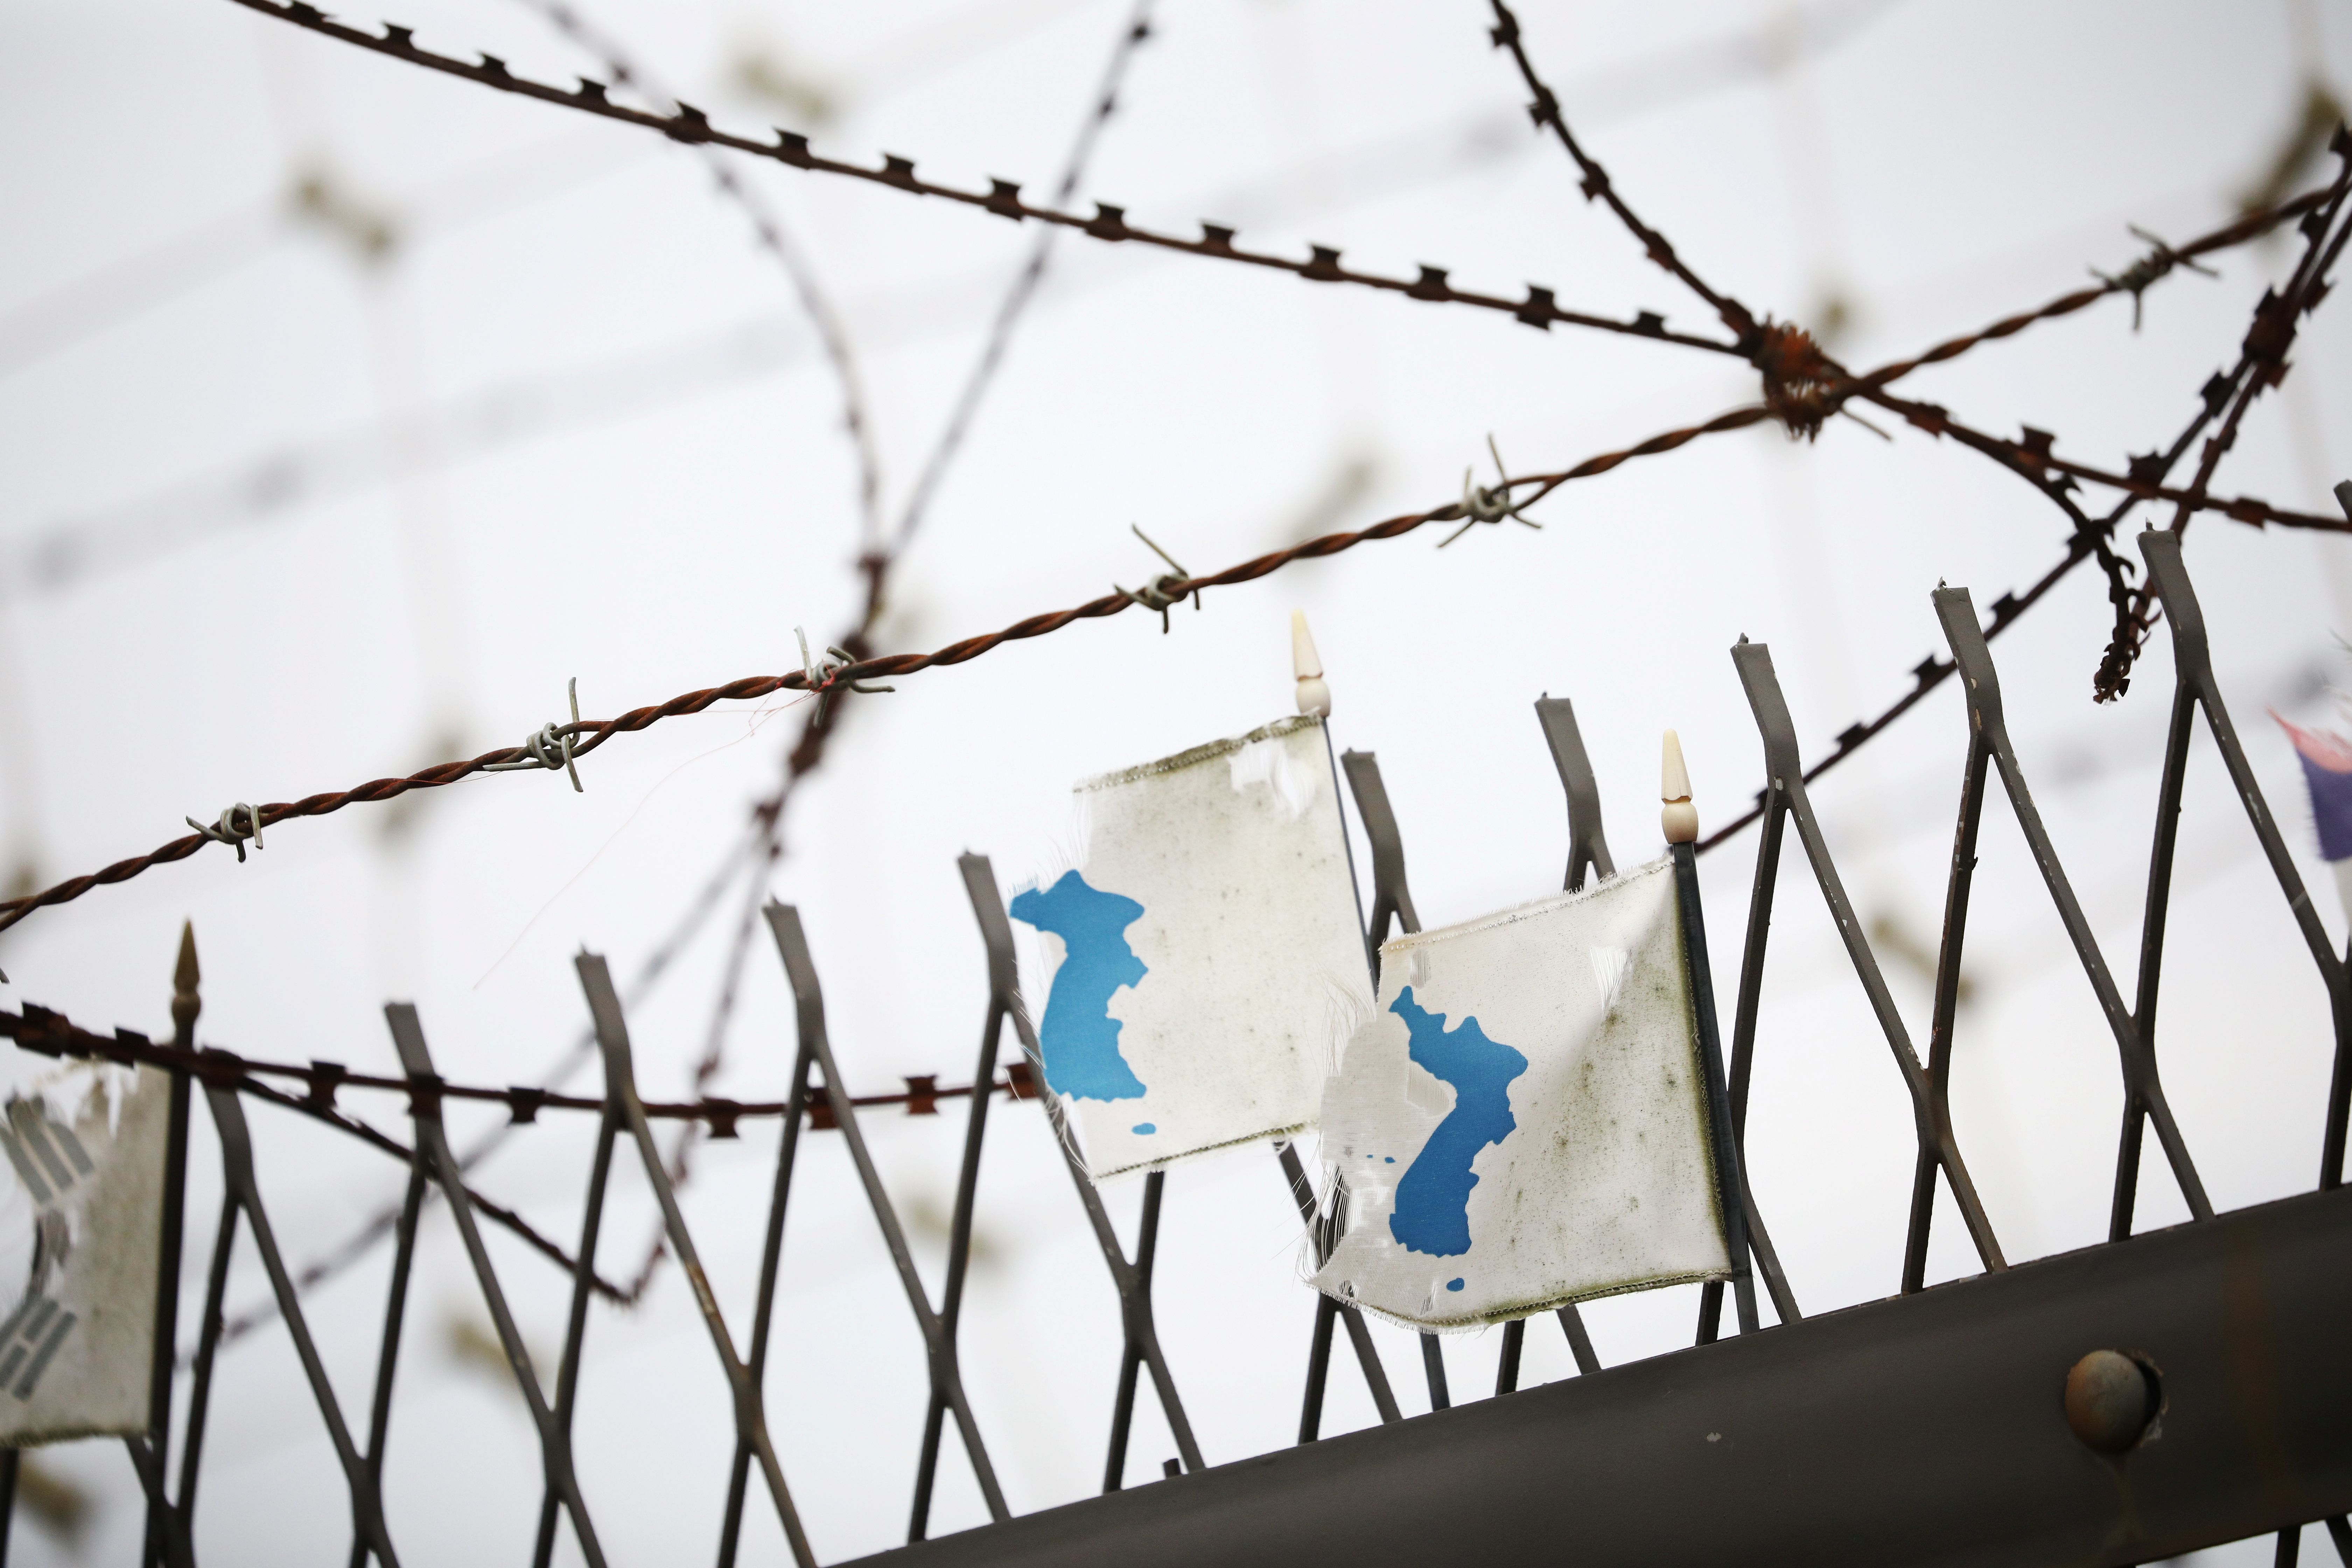 Lõuna-Koreas Pajus 28. juulil 2021. Lõuna-Koreas Pajus asuva demilitariseeritud tsooni läheduses rippuvad tugeva tuulega räsitud Korea ühinemislipud sõjaväeaia ääres. REUTERS/Kim Hong-Ji